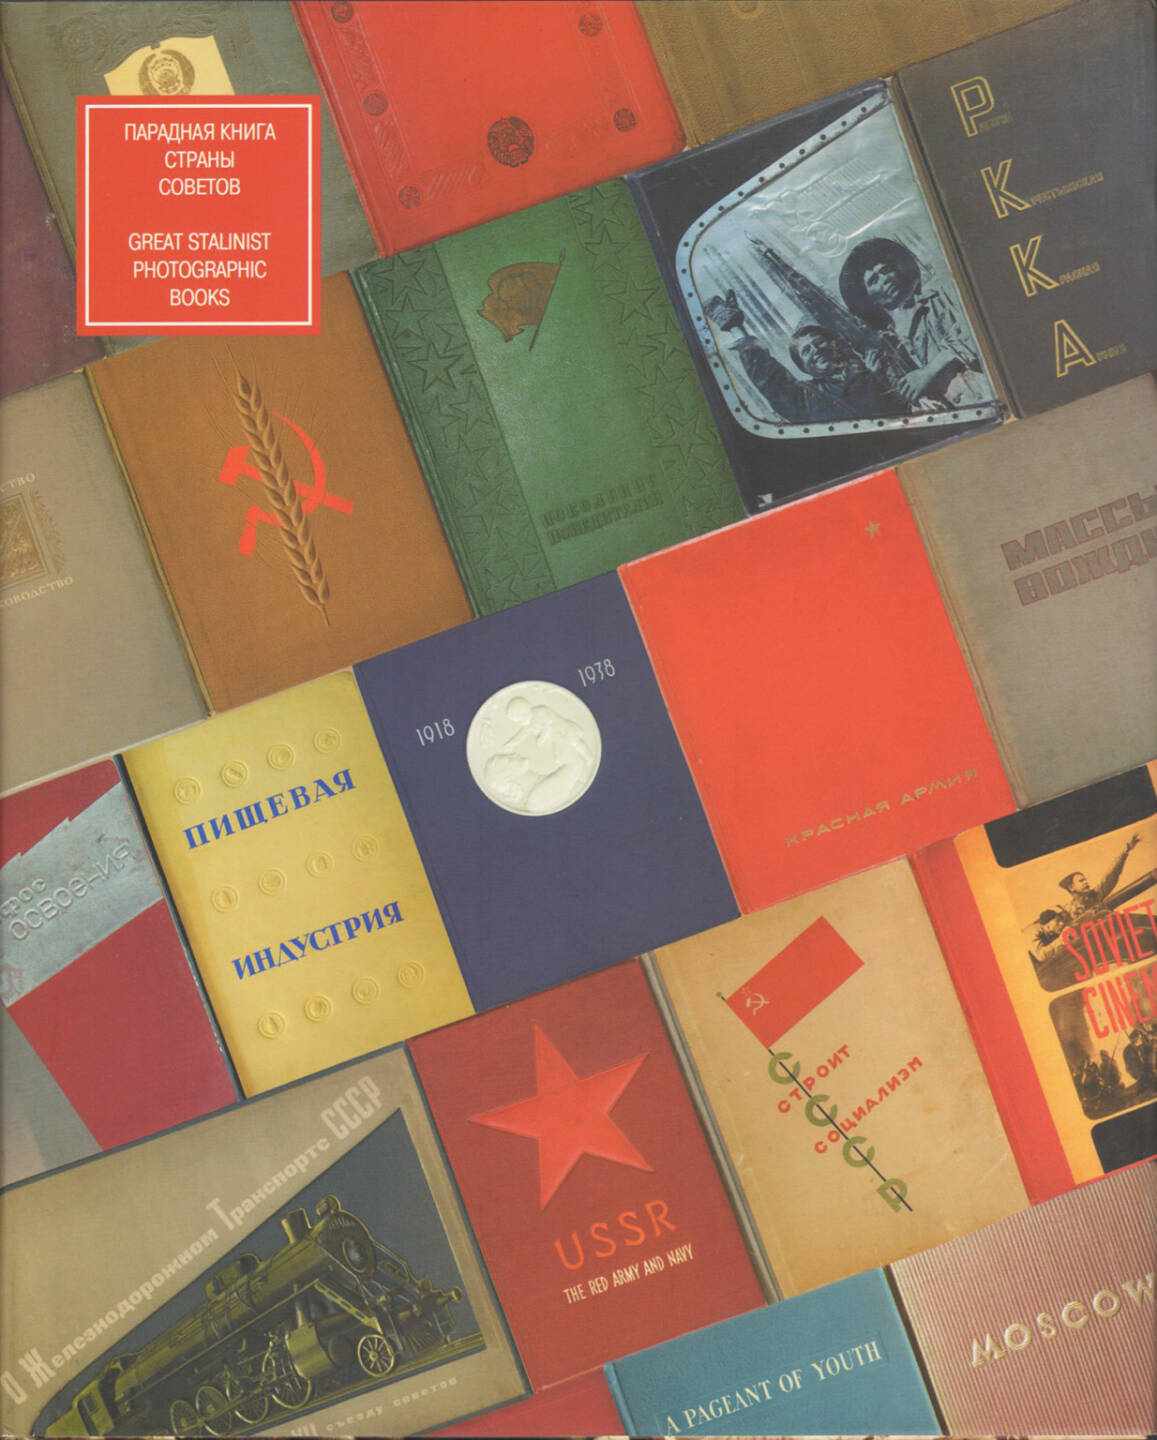 Mikhail Karasik - Great Stalinist Photobooks / Paradnajakniga Strany Sovetov, Kontakt-Kultura 2007, Cover - http://josefchladek.com/book/mikhail_karasik_-_great_stalinist_photobooks_paradnajakniga_strany_sovetov